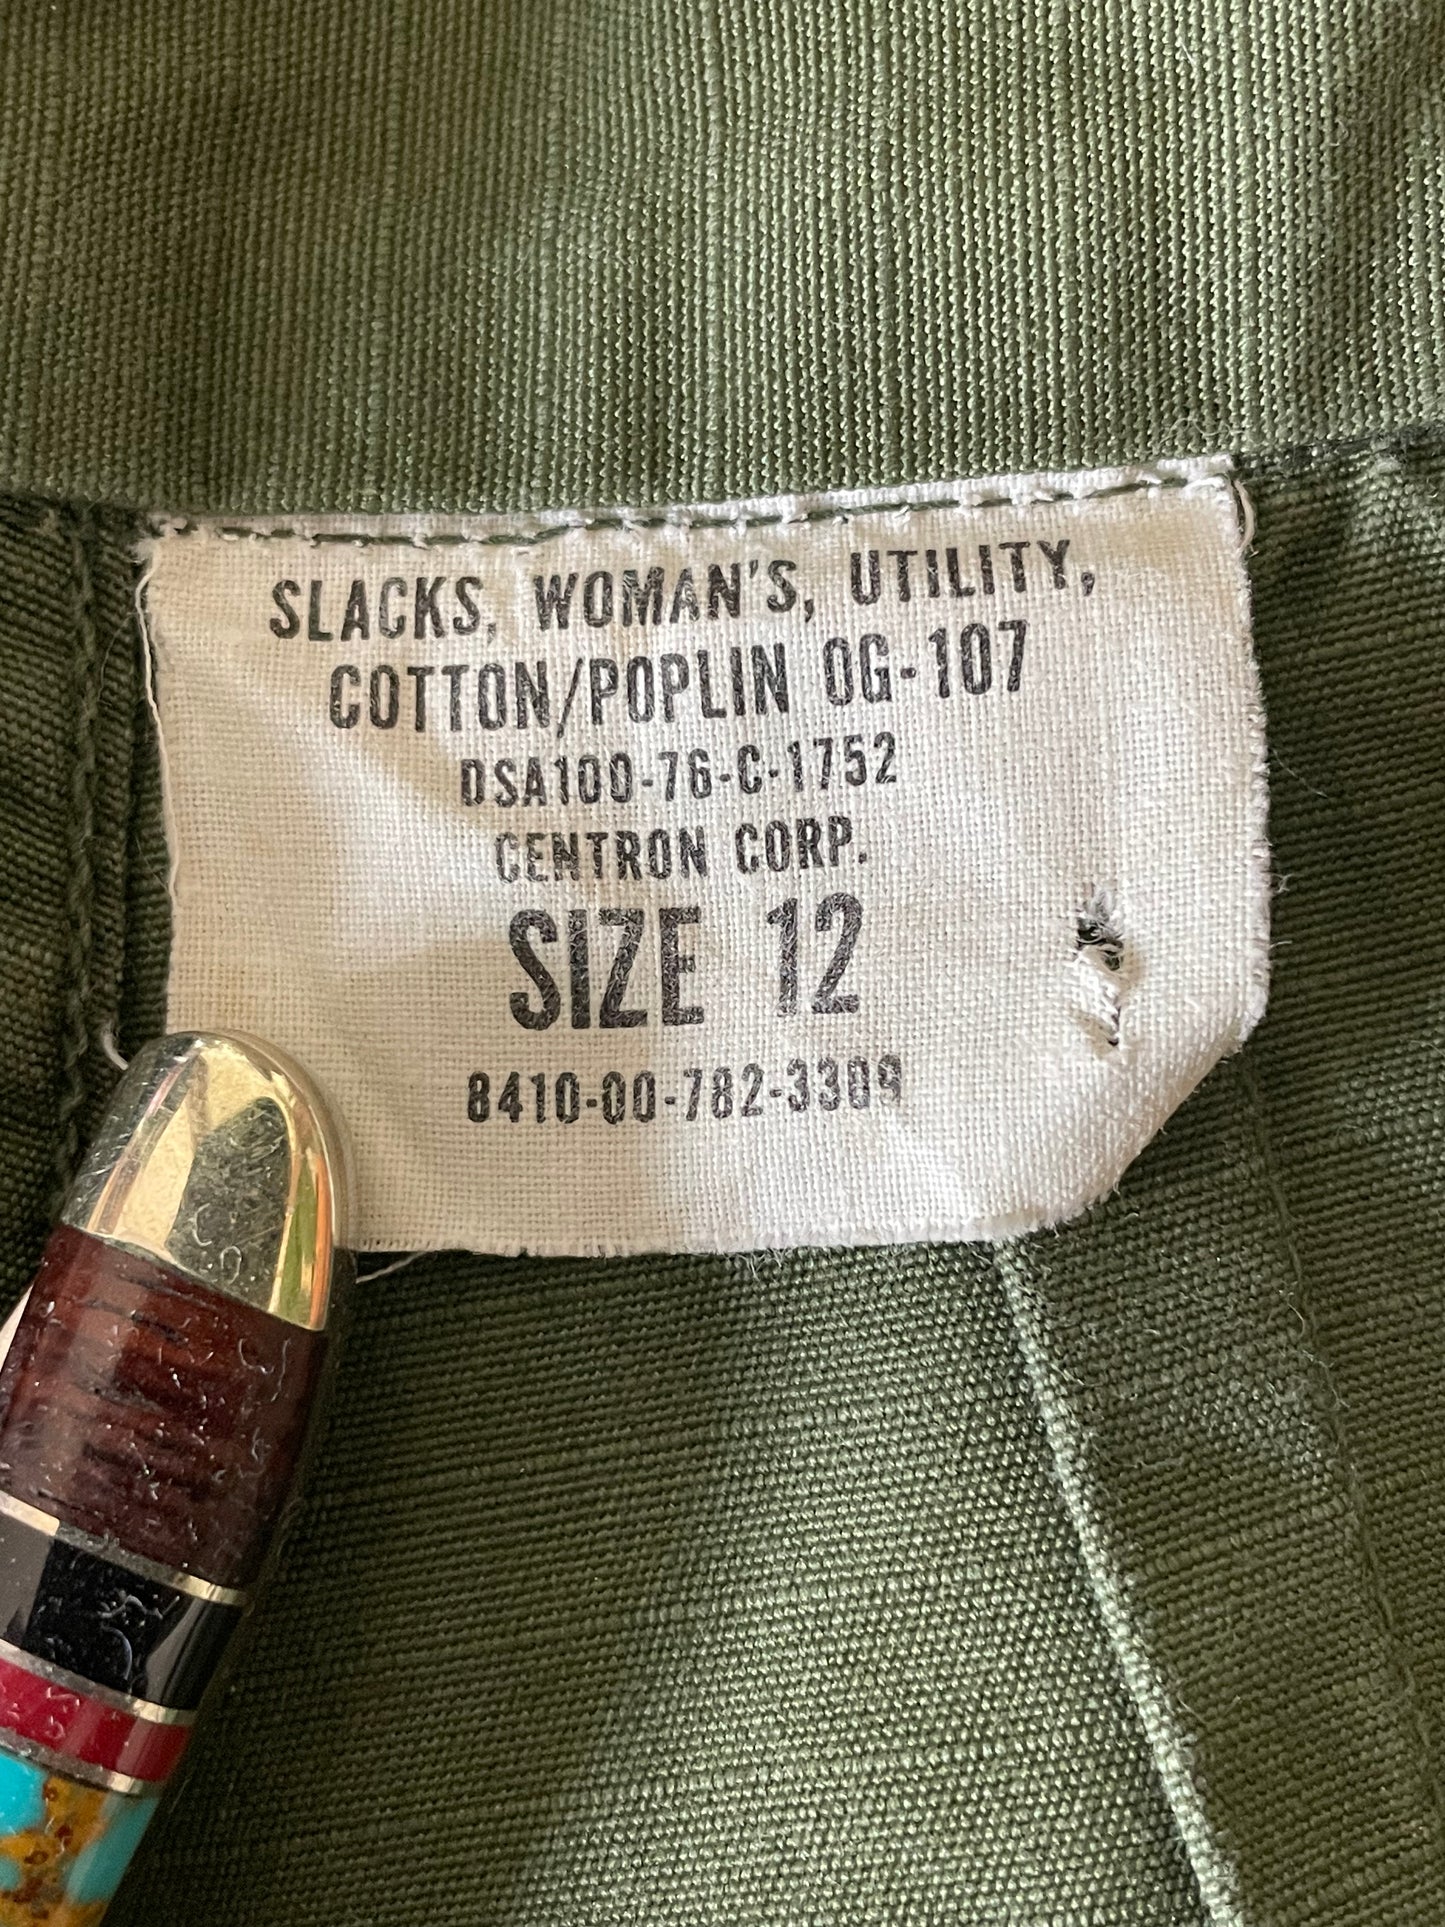 70s OG-107 Women’s Utility Slacks